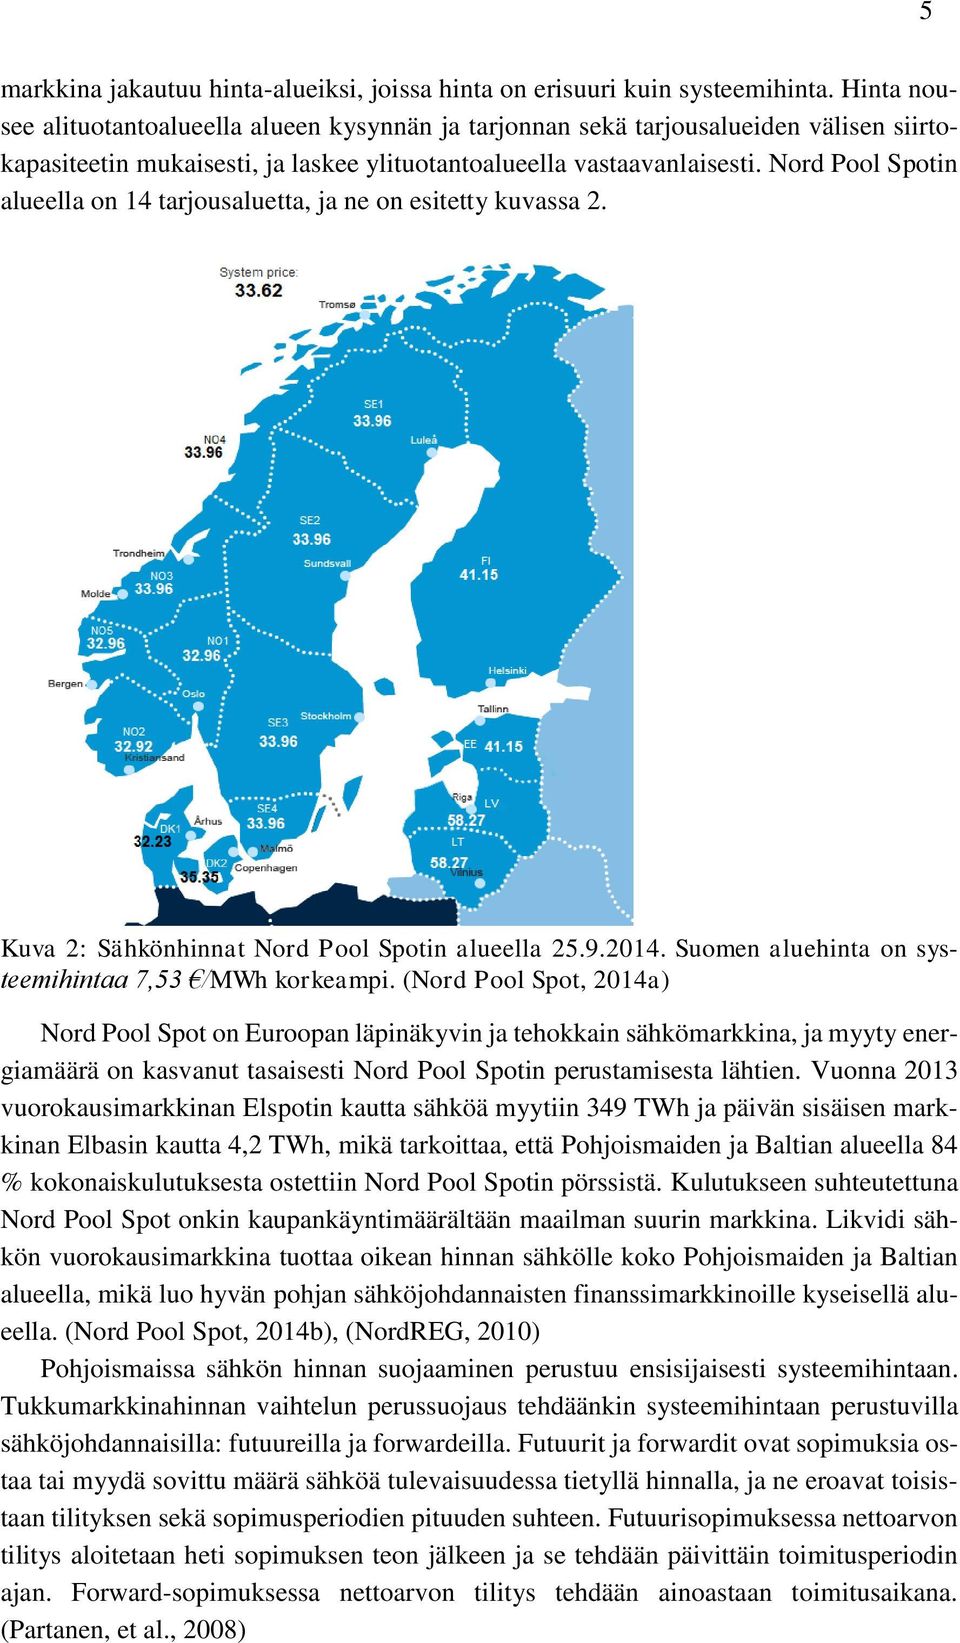 Nord Pool Spotin alueella on 14 tarjousaluetta, ja ne on esitetty kuvassa 2. Kuva 2: Sähkönhinnat Nord Pool Spotin alueella 25.9.2014. Suomen aluehinta on systeemihintaa 7,53 /MWh korkeampi.